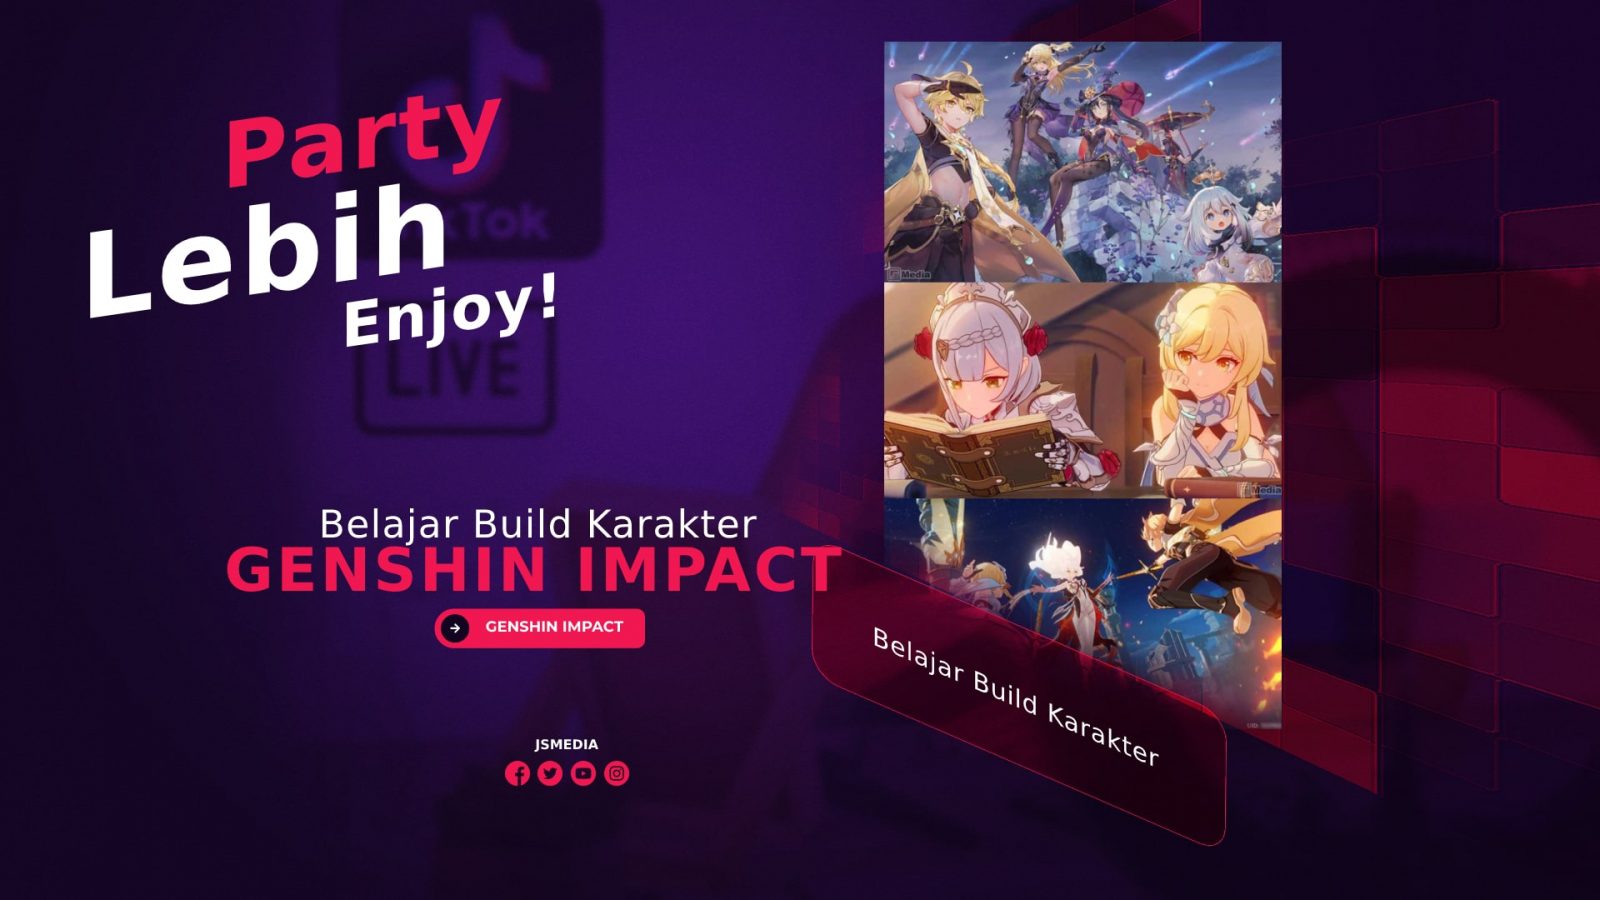 Belajar Build Karakter Genshin Impact, Party Lebih Enjoy!